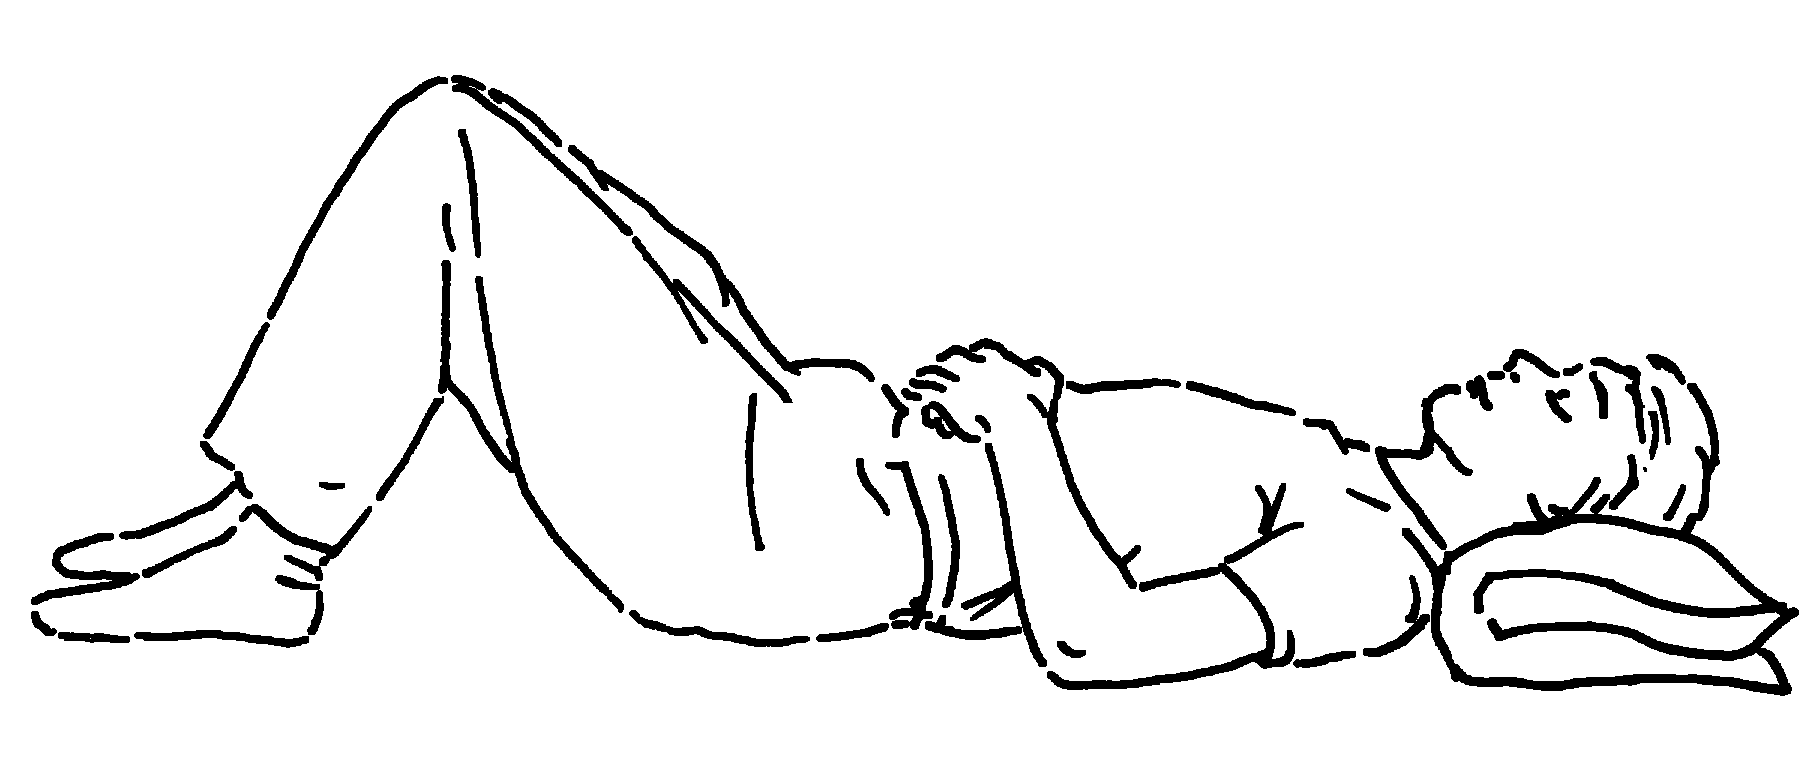 Rygliggende person ligger med bøjede ben og hænderne på maven